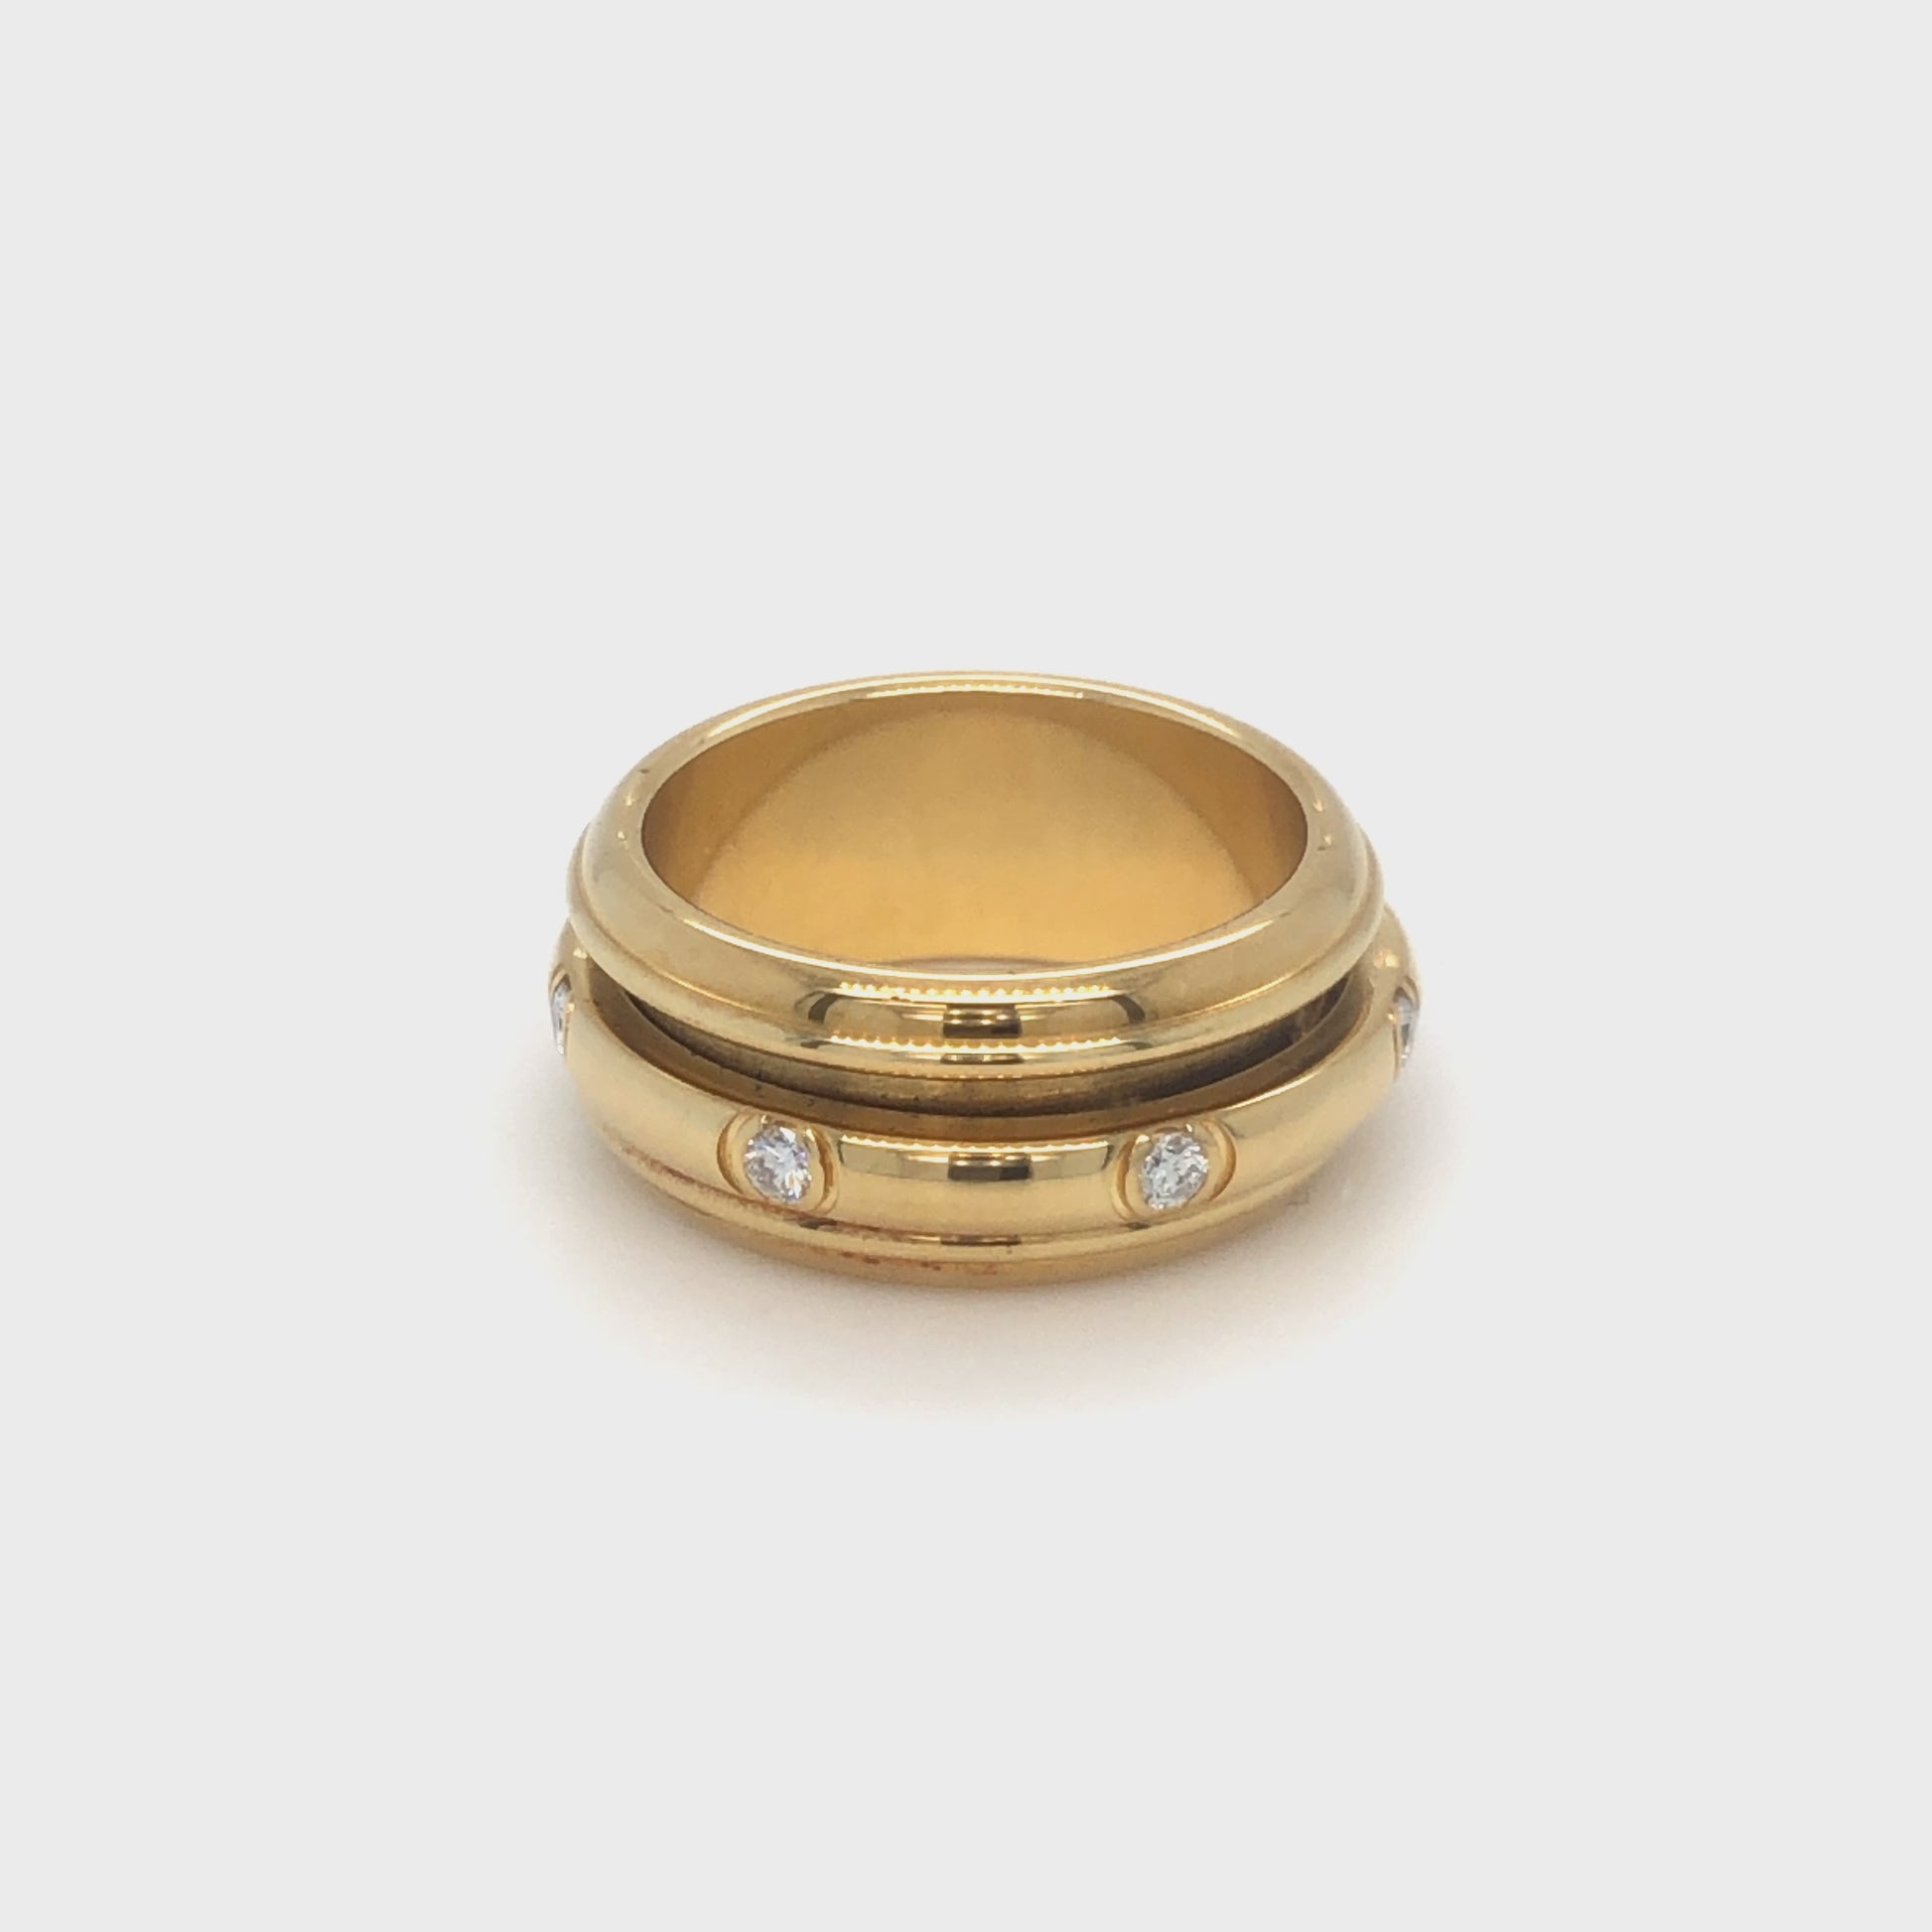 Piaget Possession Ring in 750 Gelbgold mit sieben Brillanten